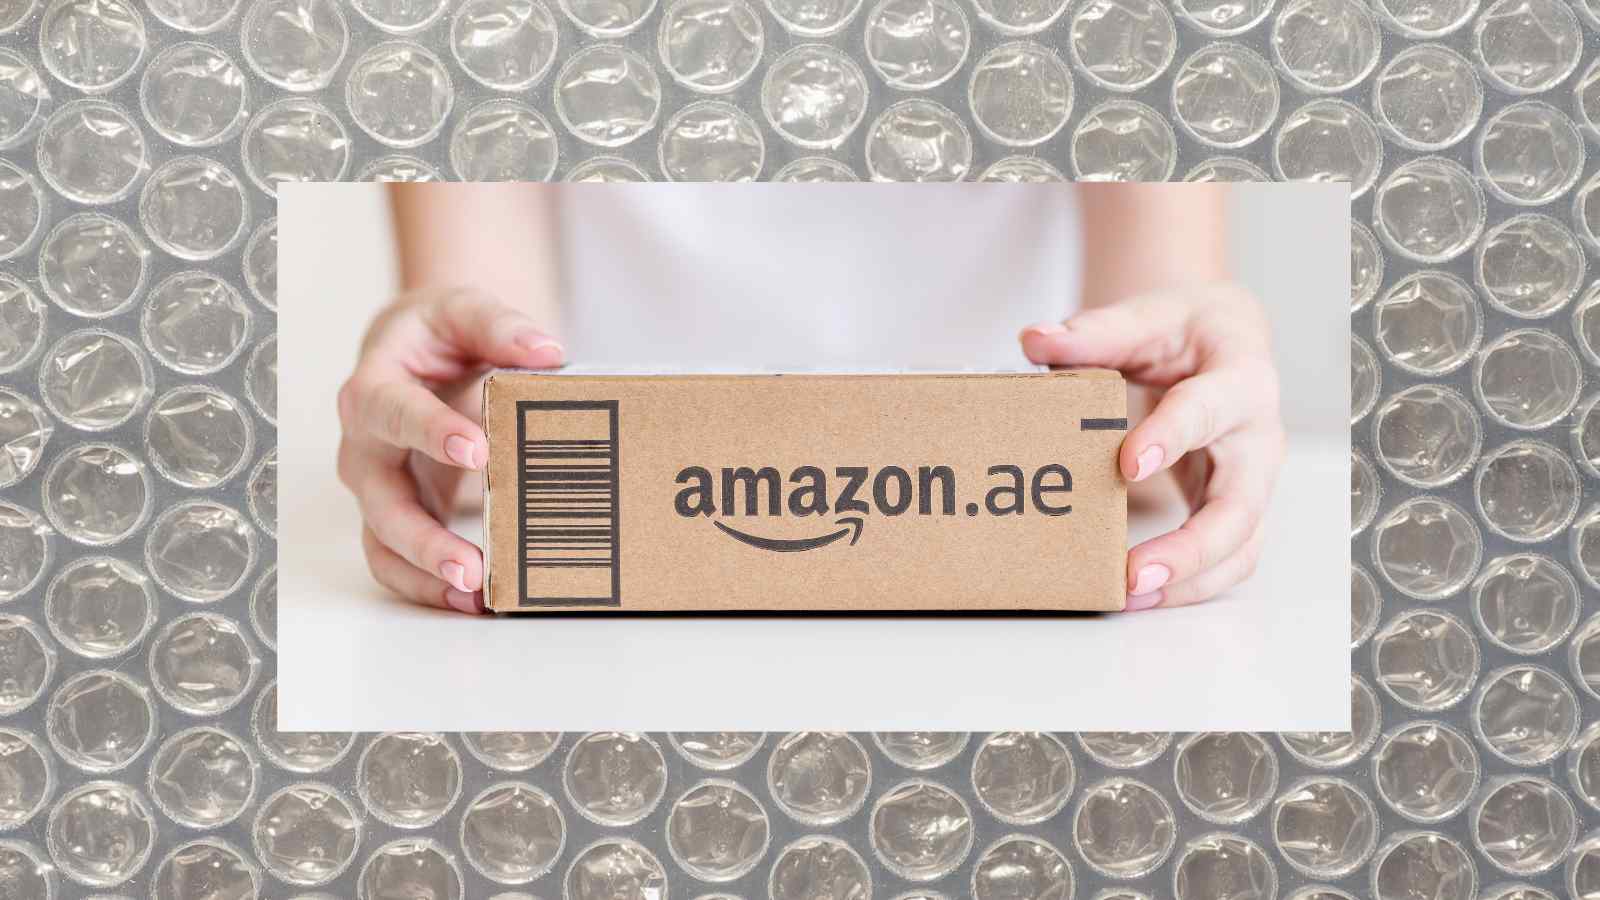 Amazon decide di tagliare con la plastica negli imballaggi, sostituendo le famose bolle d'aria con materiali alternativi sostenibili.